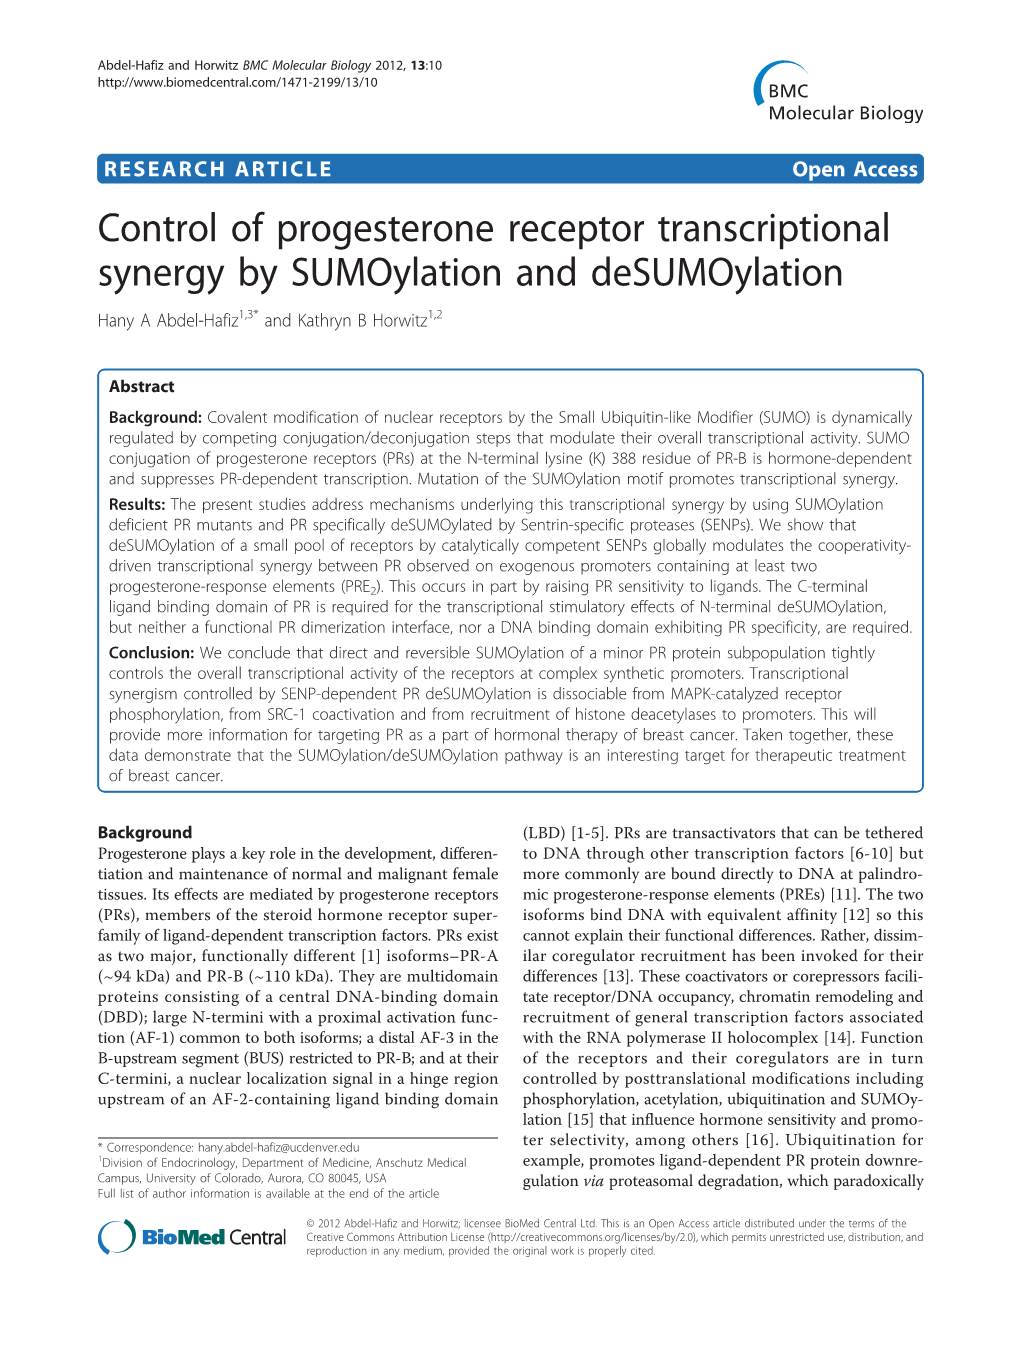 Control of Progesterone Receptor Transcriptional Synergy by Sumoylation and Desumoylation Hany a Abdel-Hafiz1,3* and Kathryn B Horwitz1,2